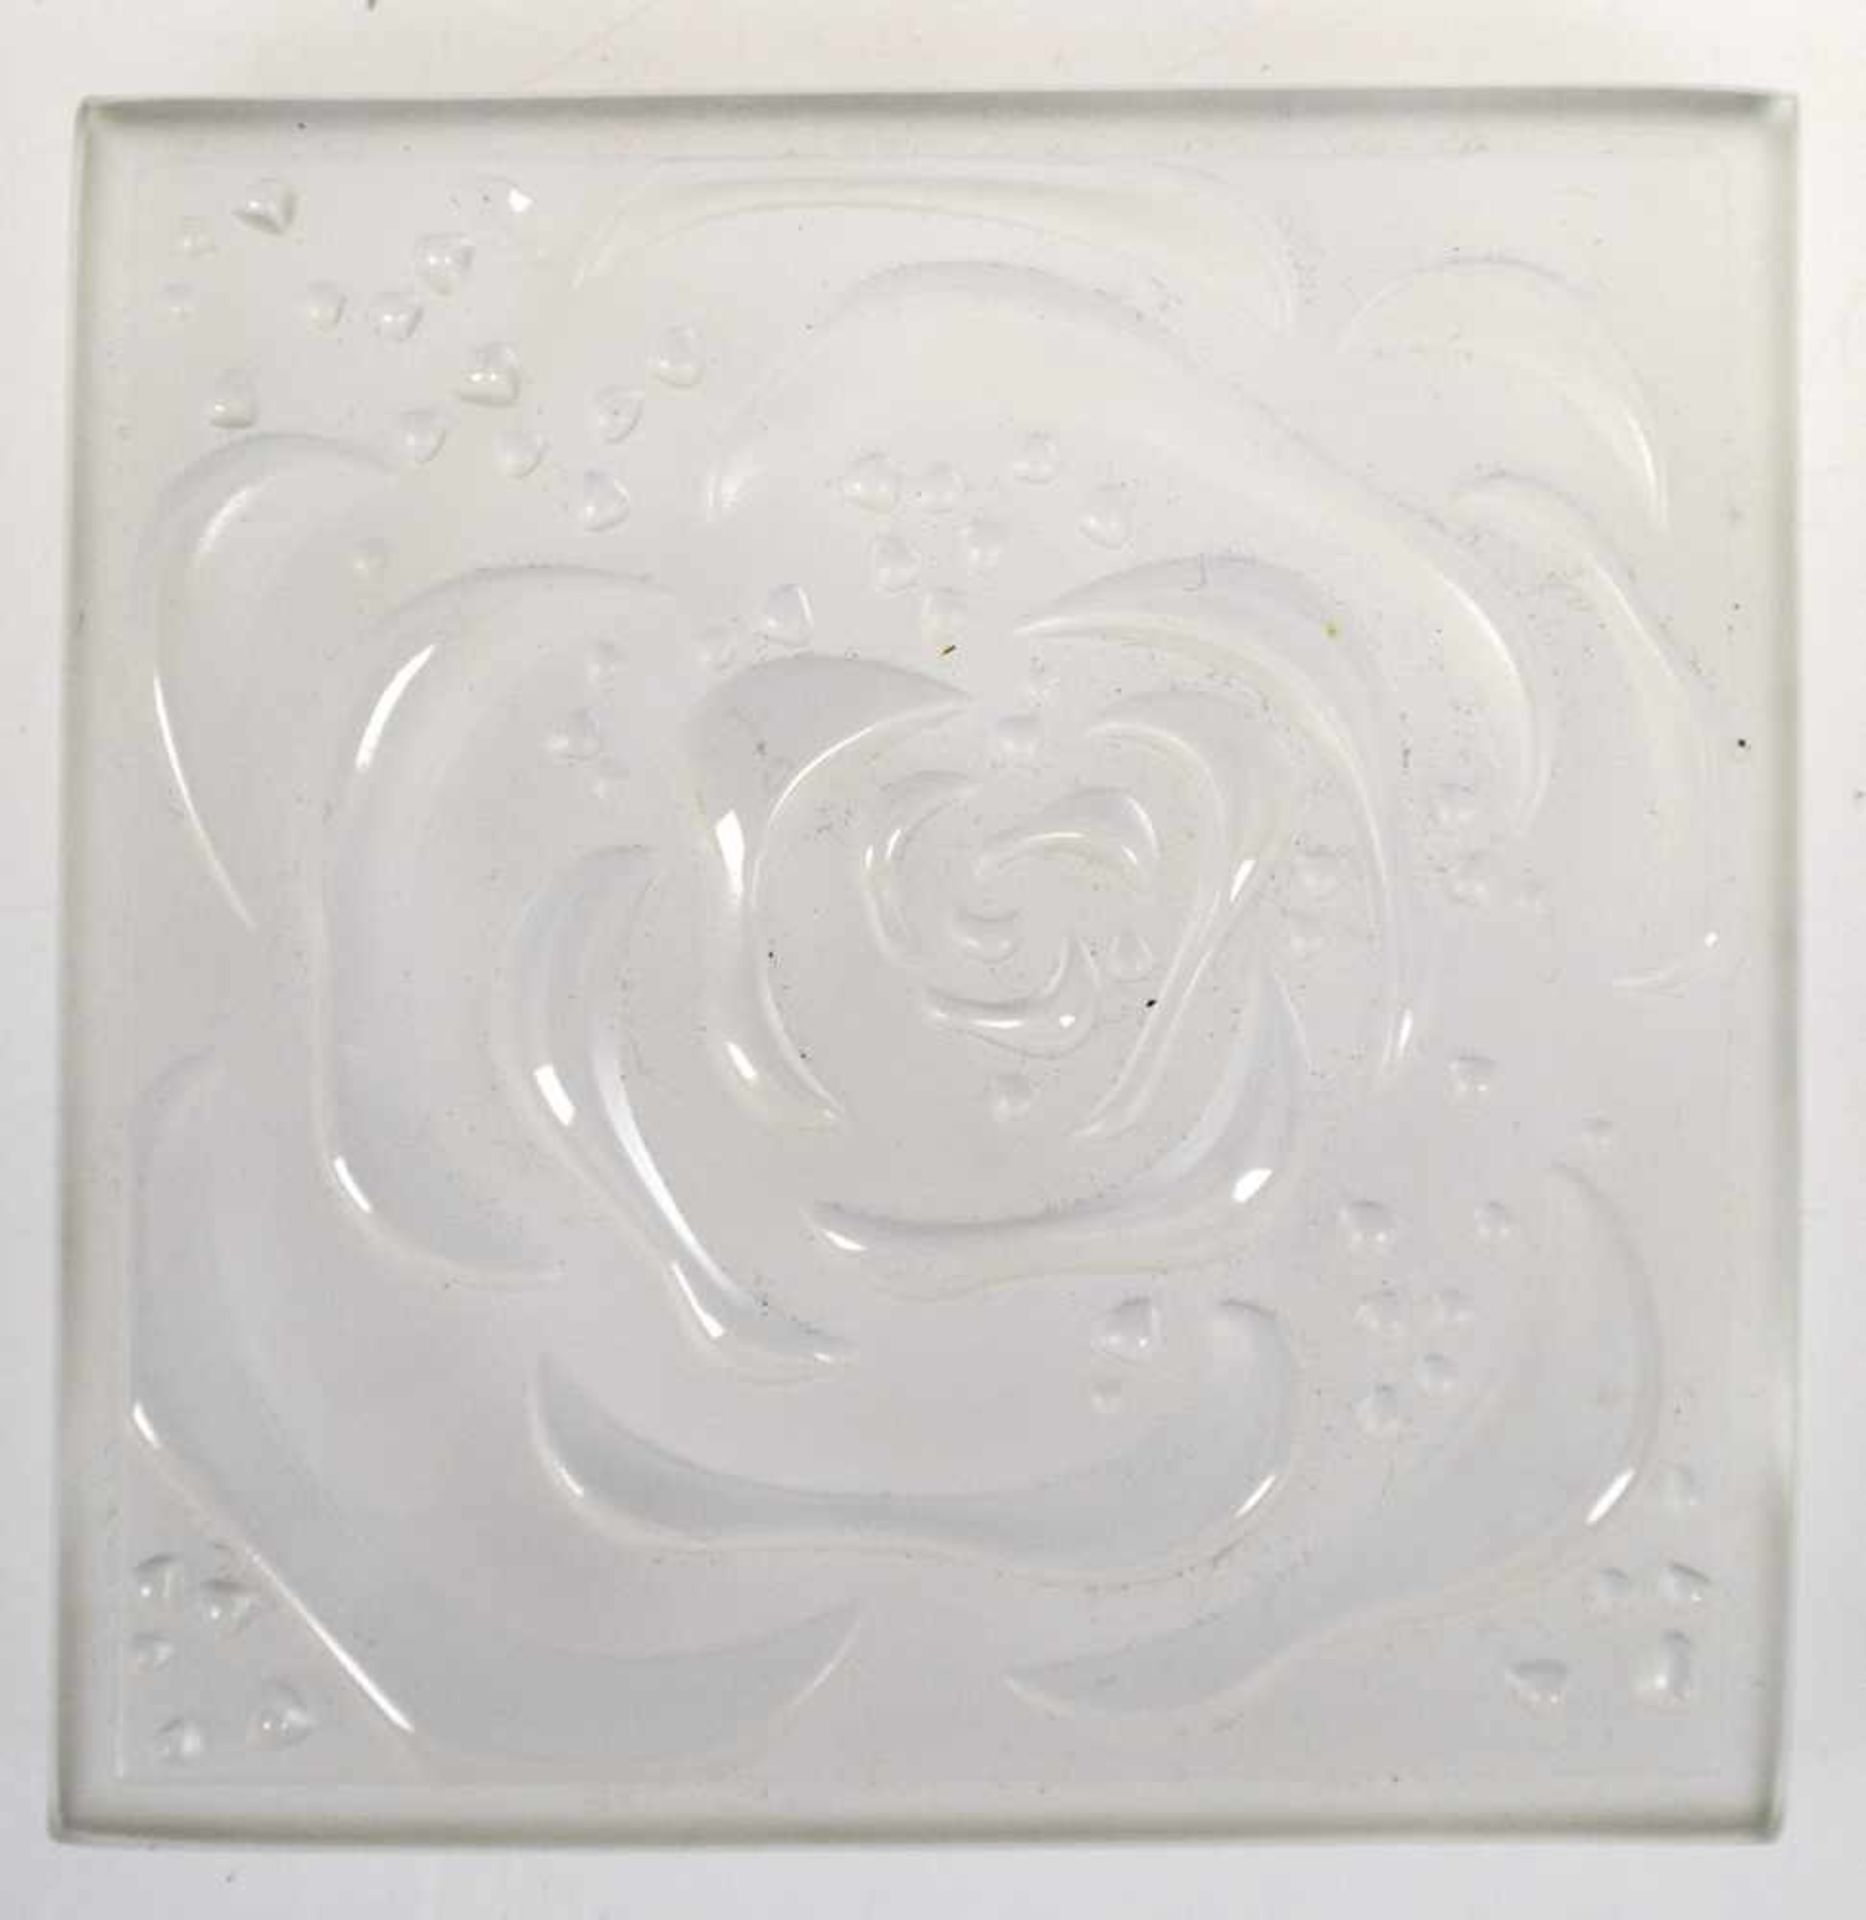 Lalique-Glasobjekt, mit reliefierter Darstellung einer Rose, quadratische Form,geschliffen, 11,